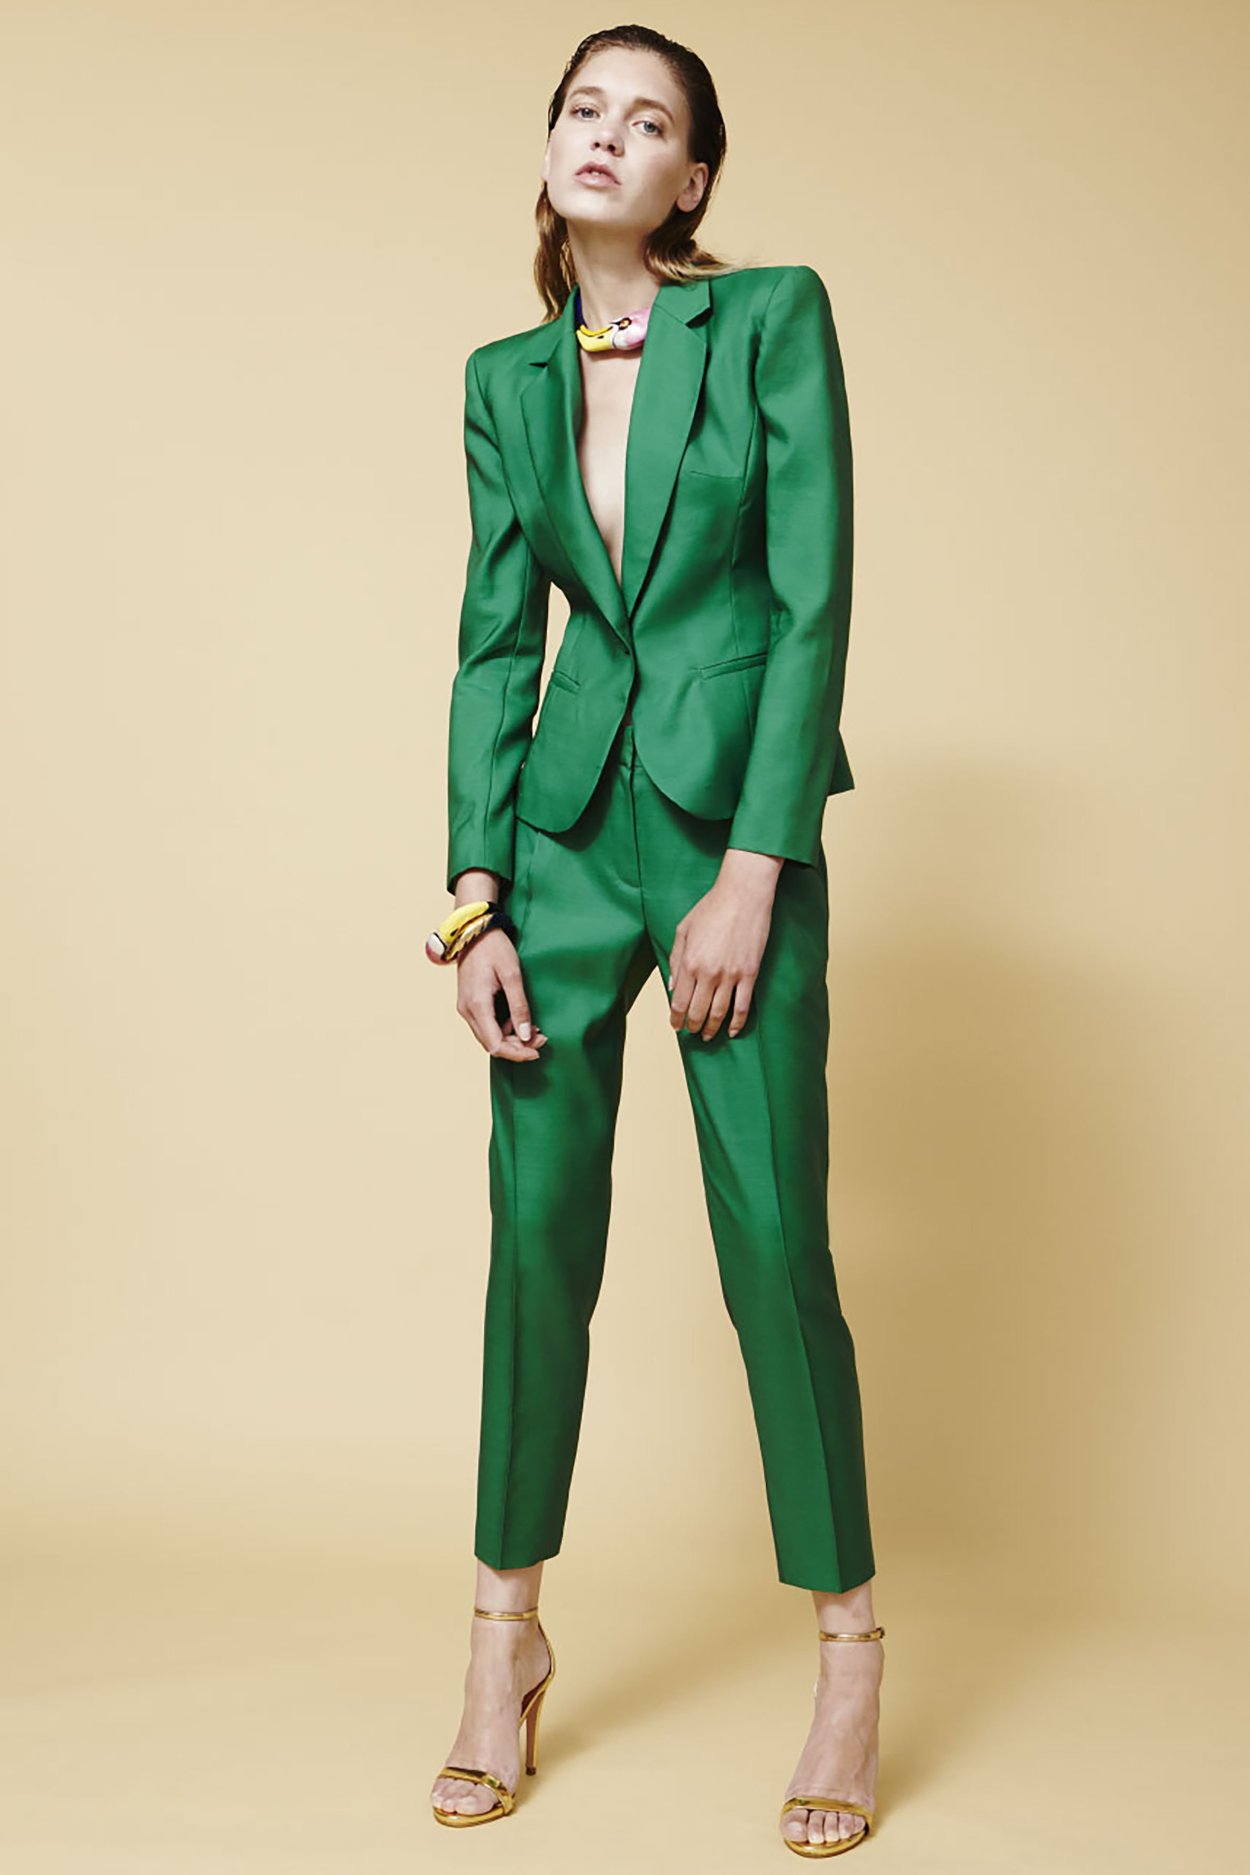 Обувь под зеленый костюм женский